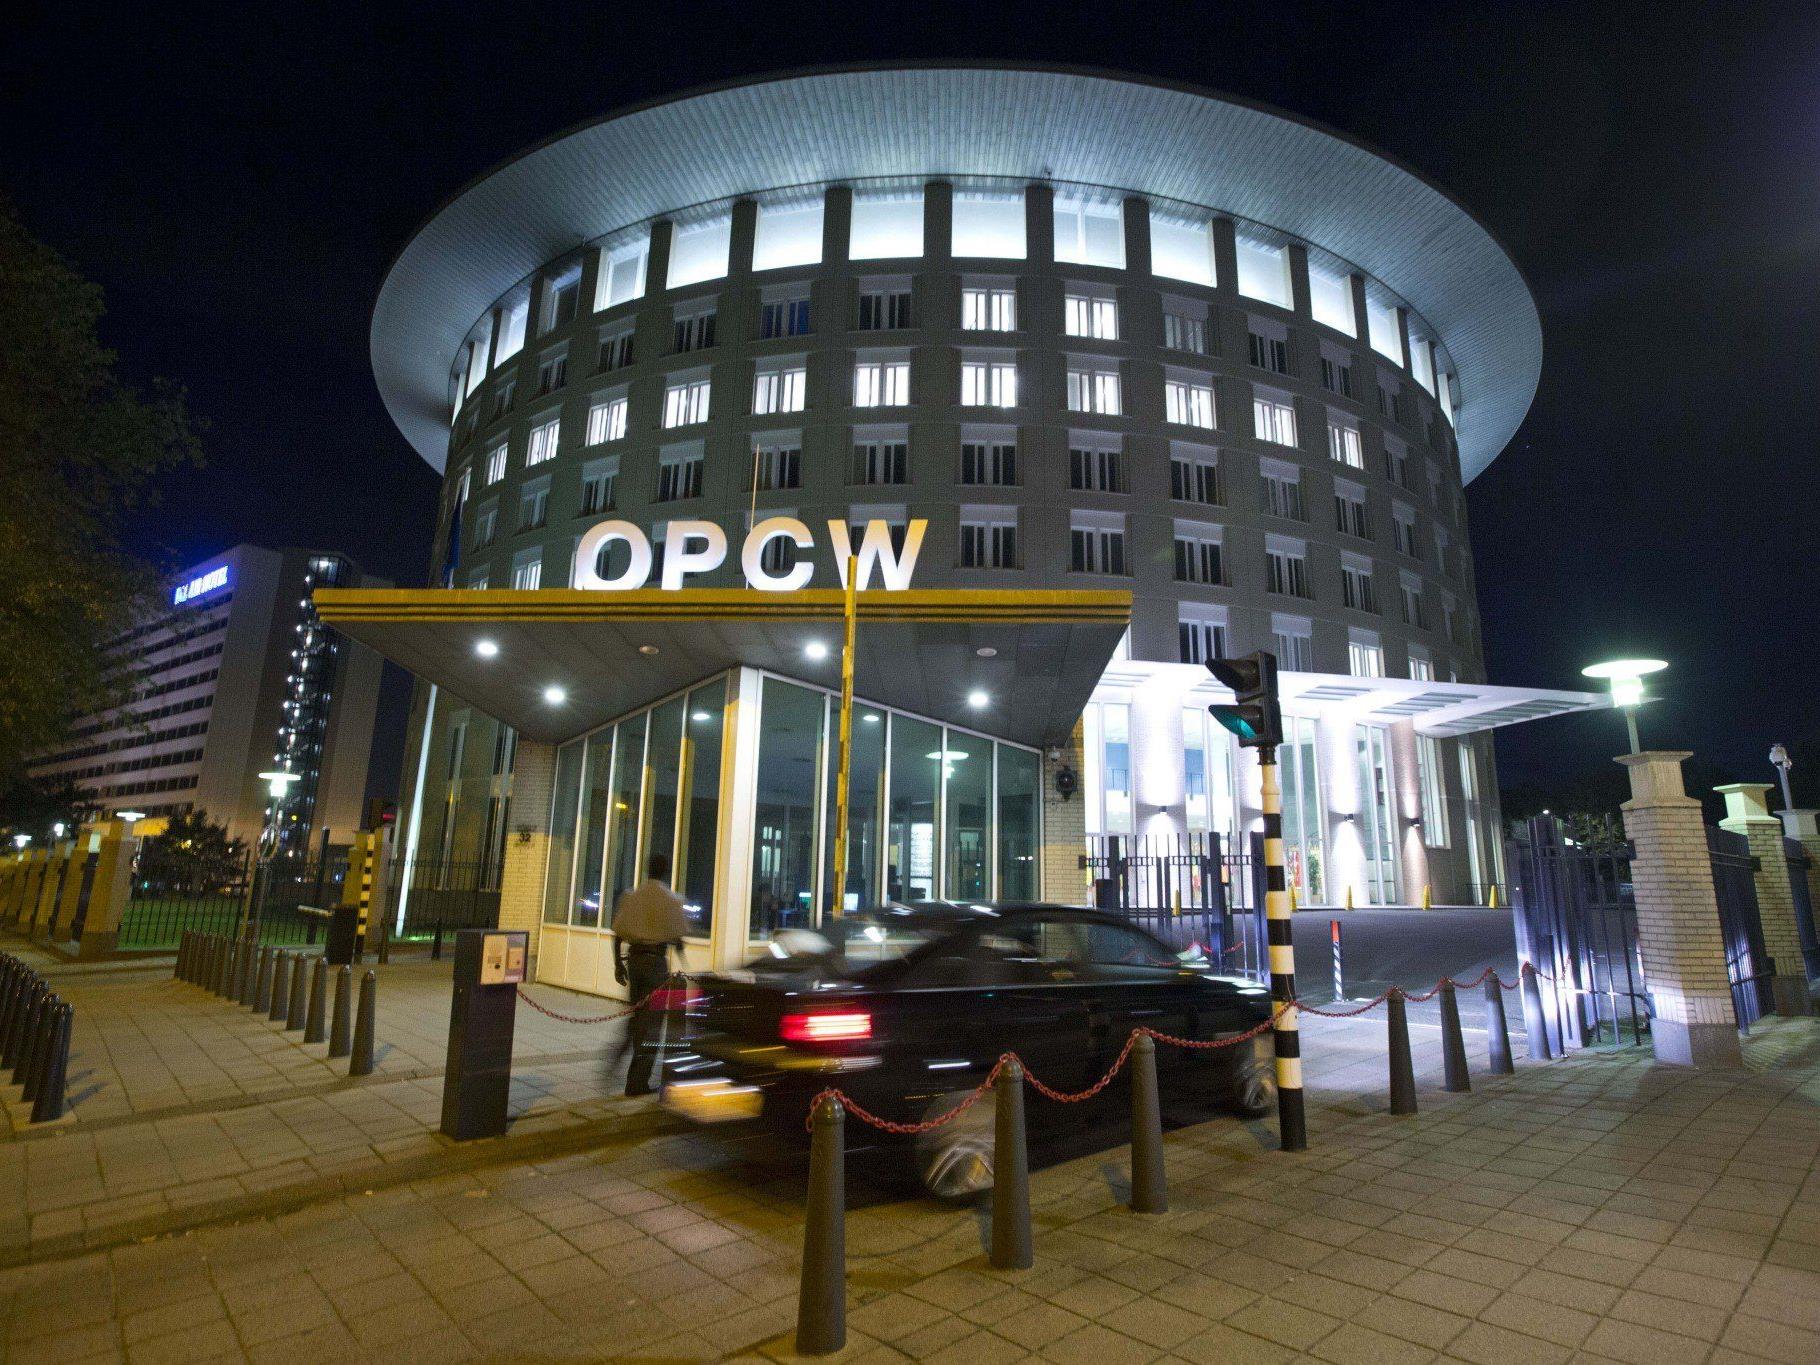 OPCW: Seit 1997 mehr als 5.000 Inspektionen in 86 Ländern - Derzeit Einsatz in Syrien